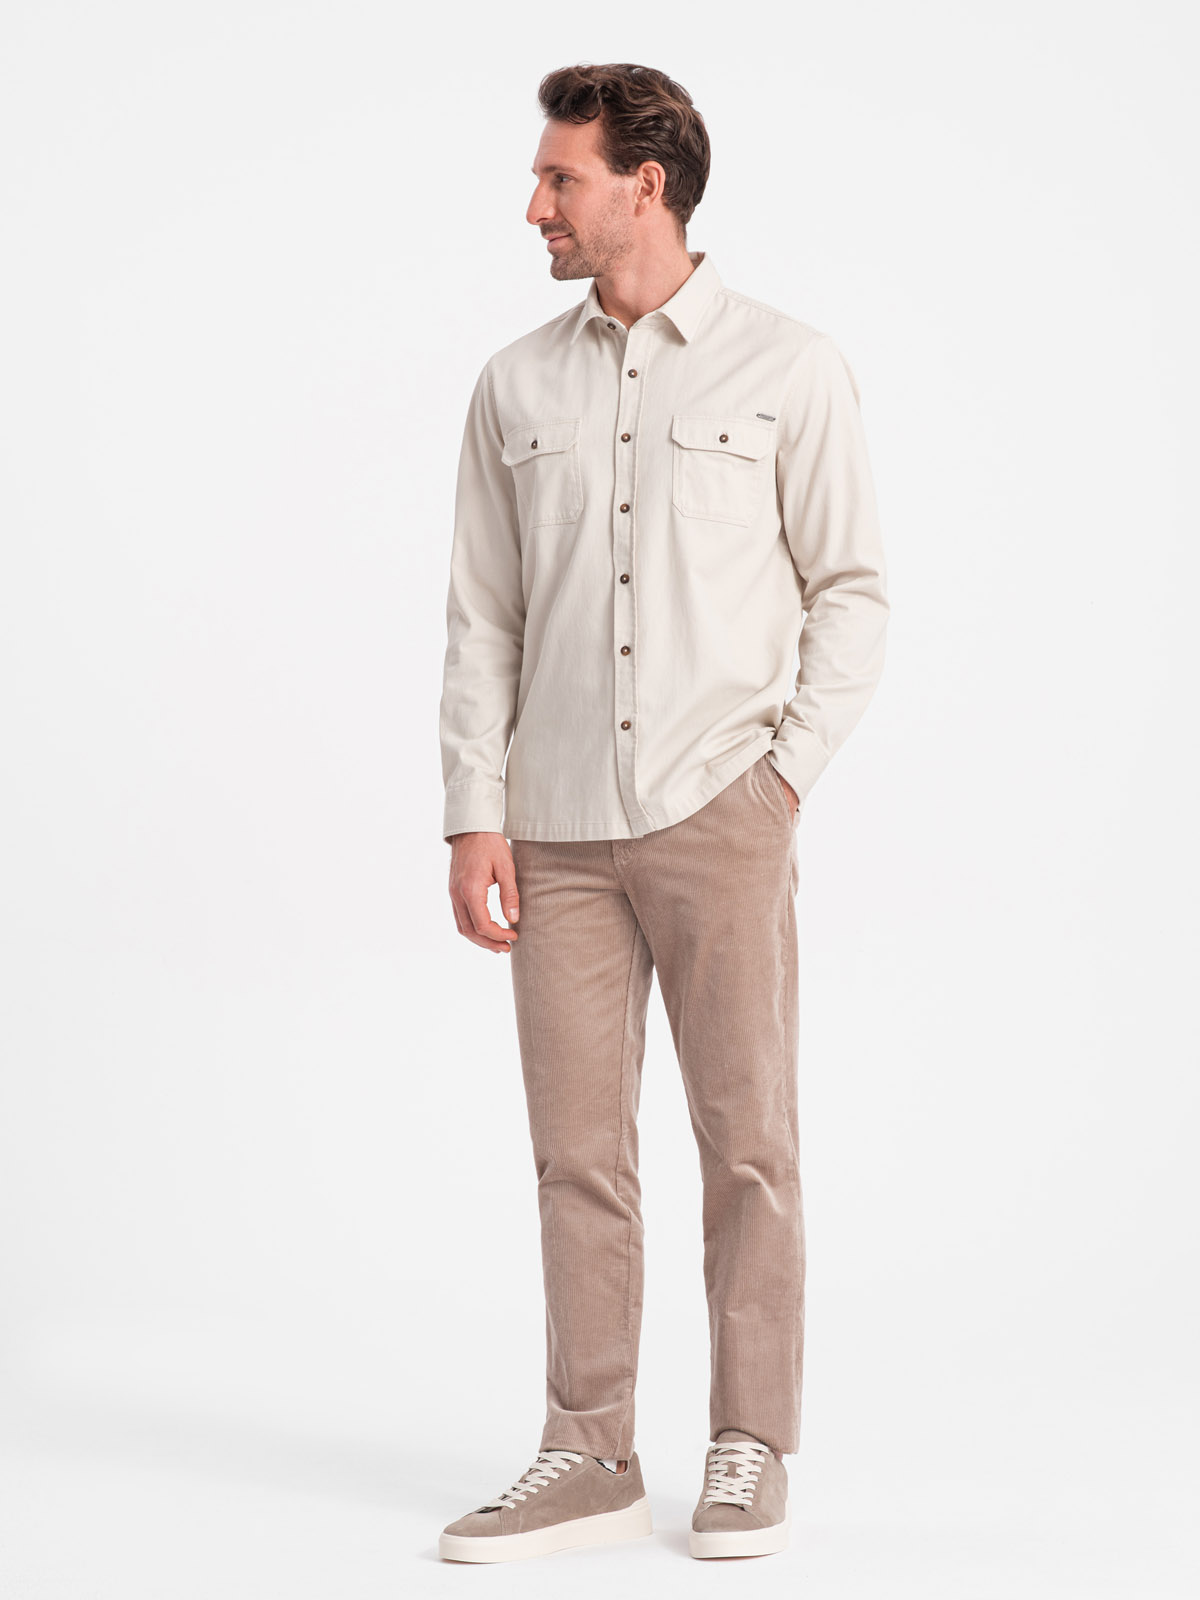 Levně Pánská bavlněná košile REGULAR FIT s kapsami na knoflíky - krémová V1 OM-SHCS-0146